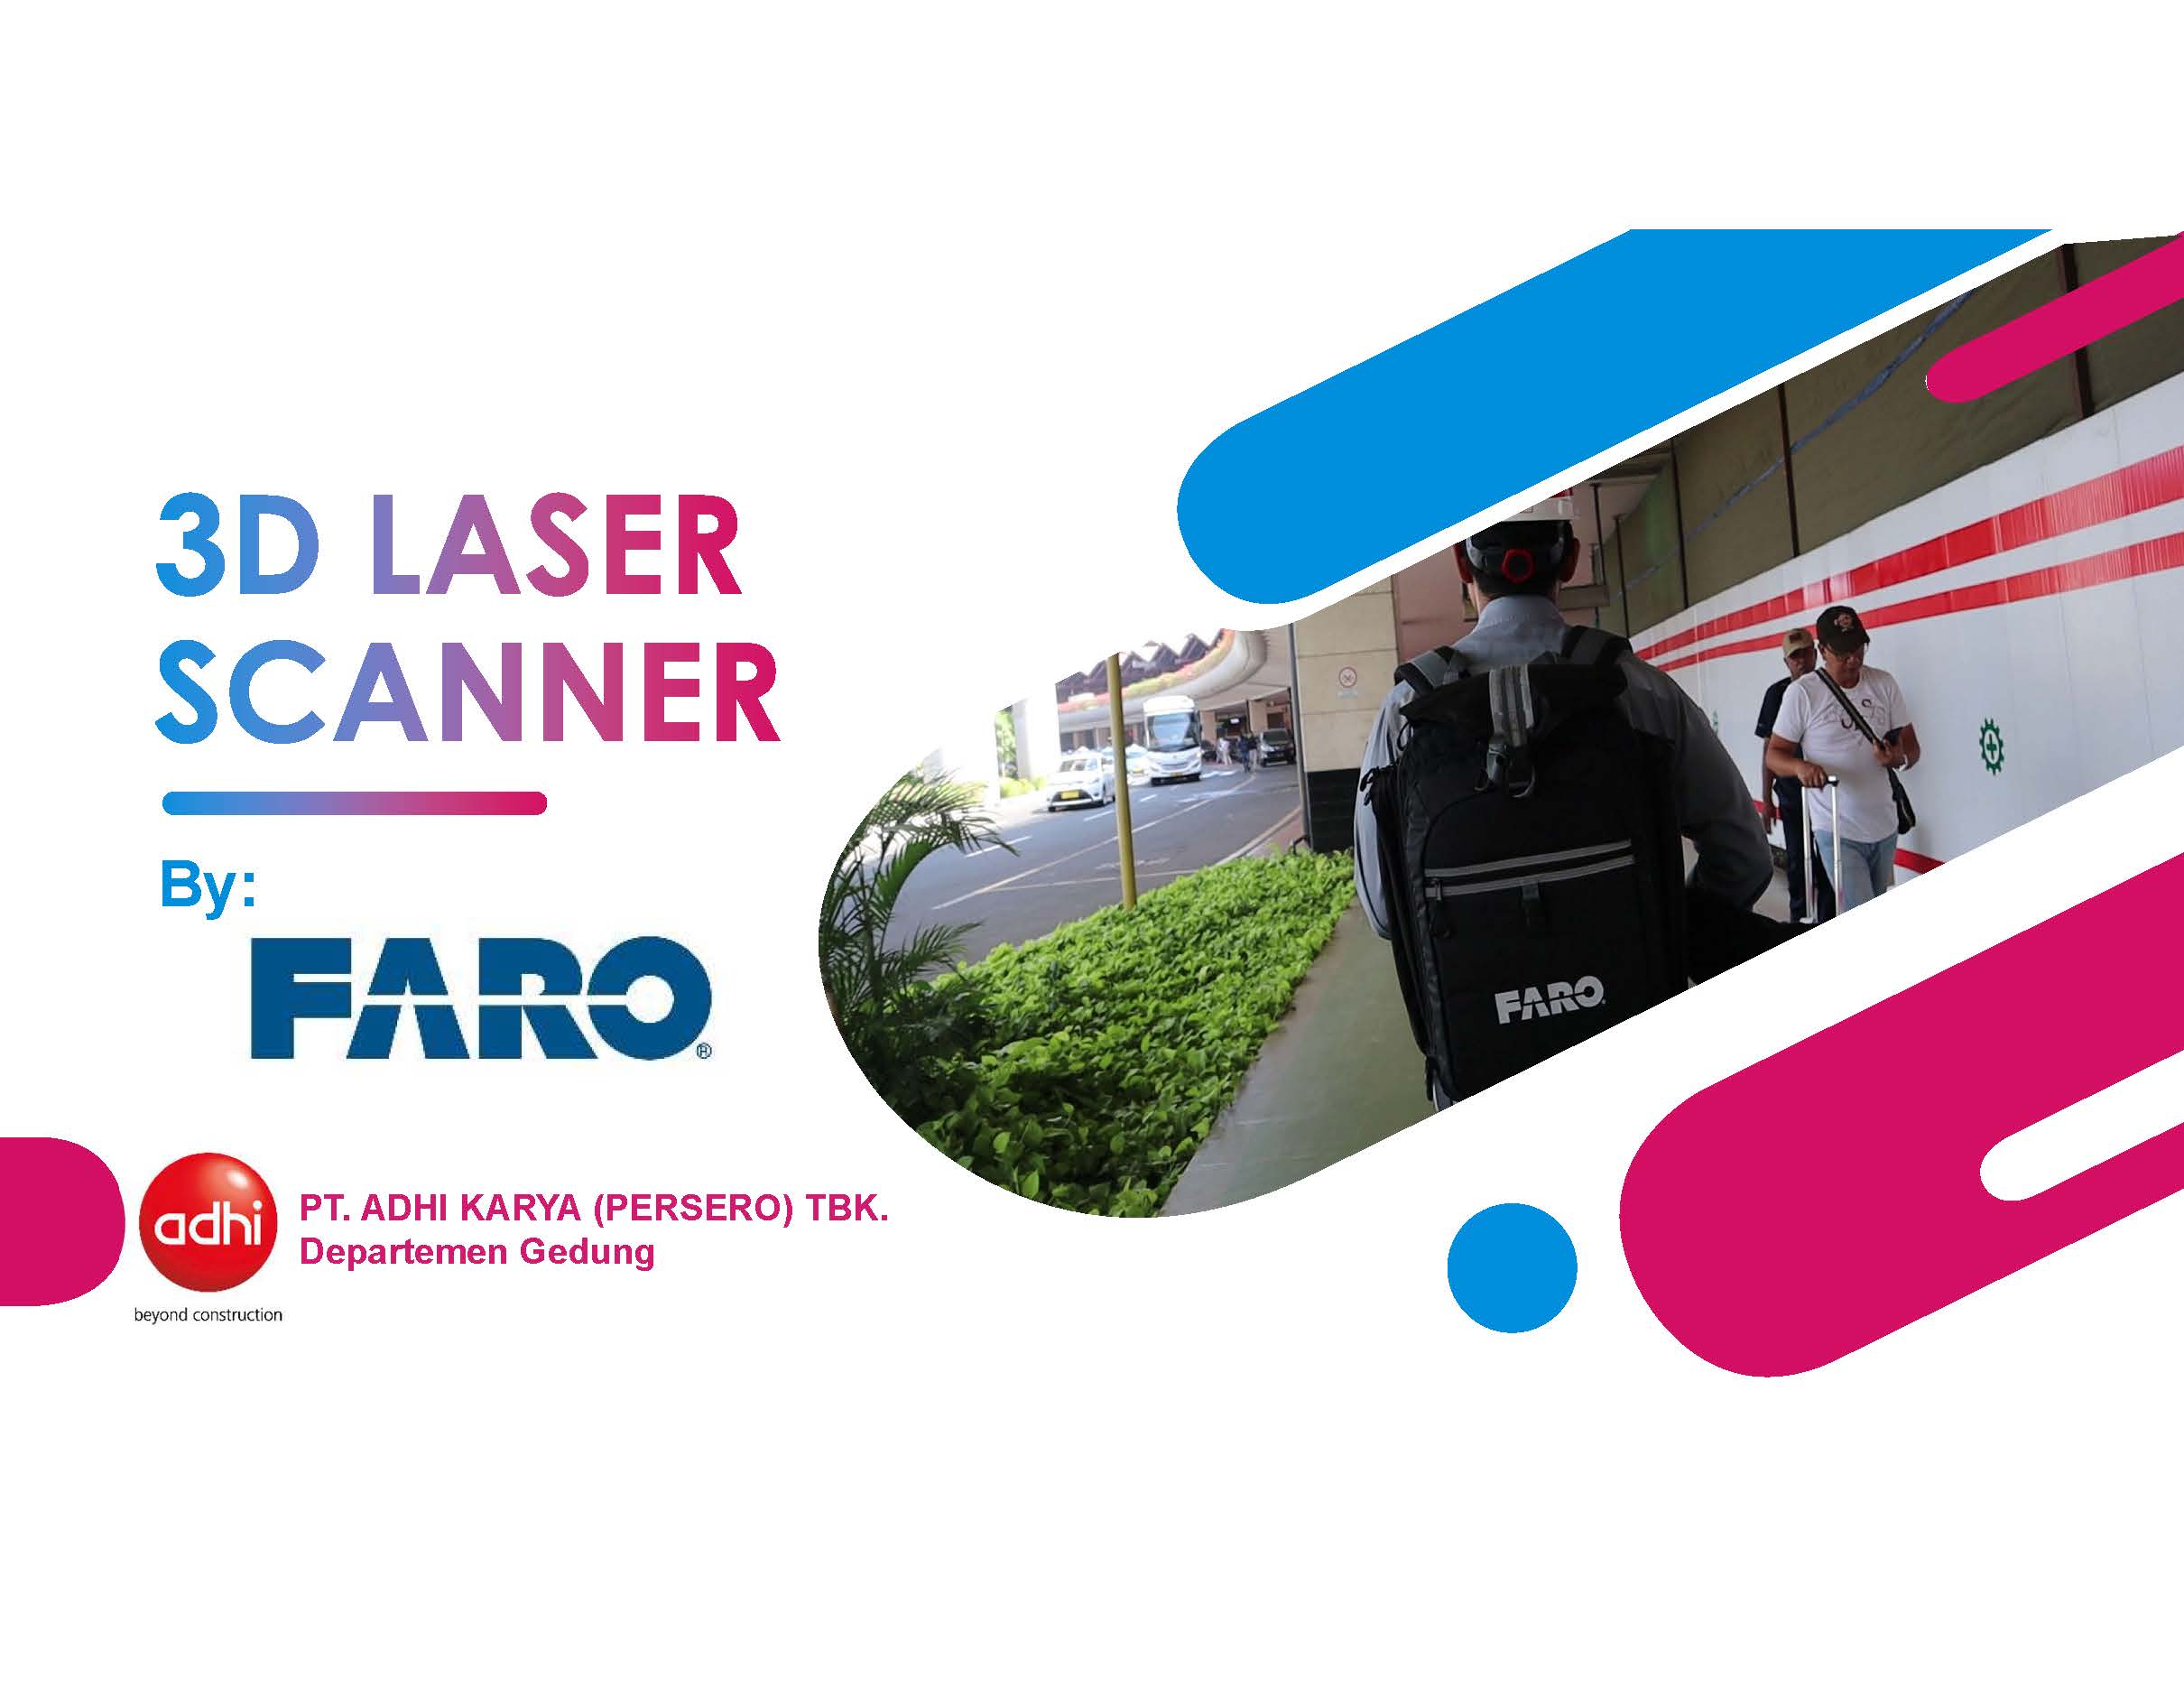 3D Laser Scanner by FARO